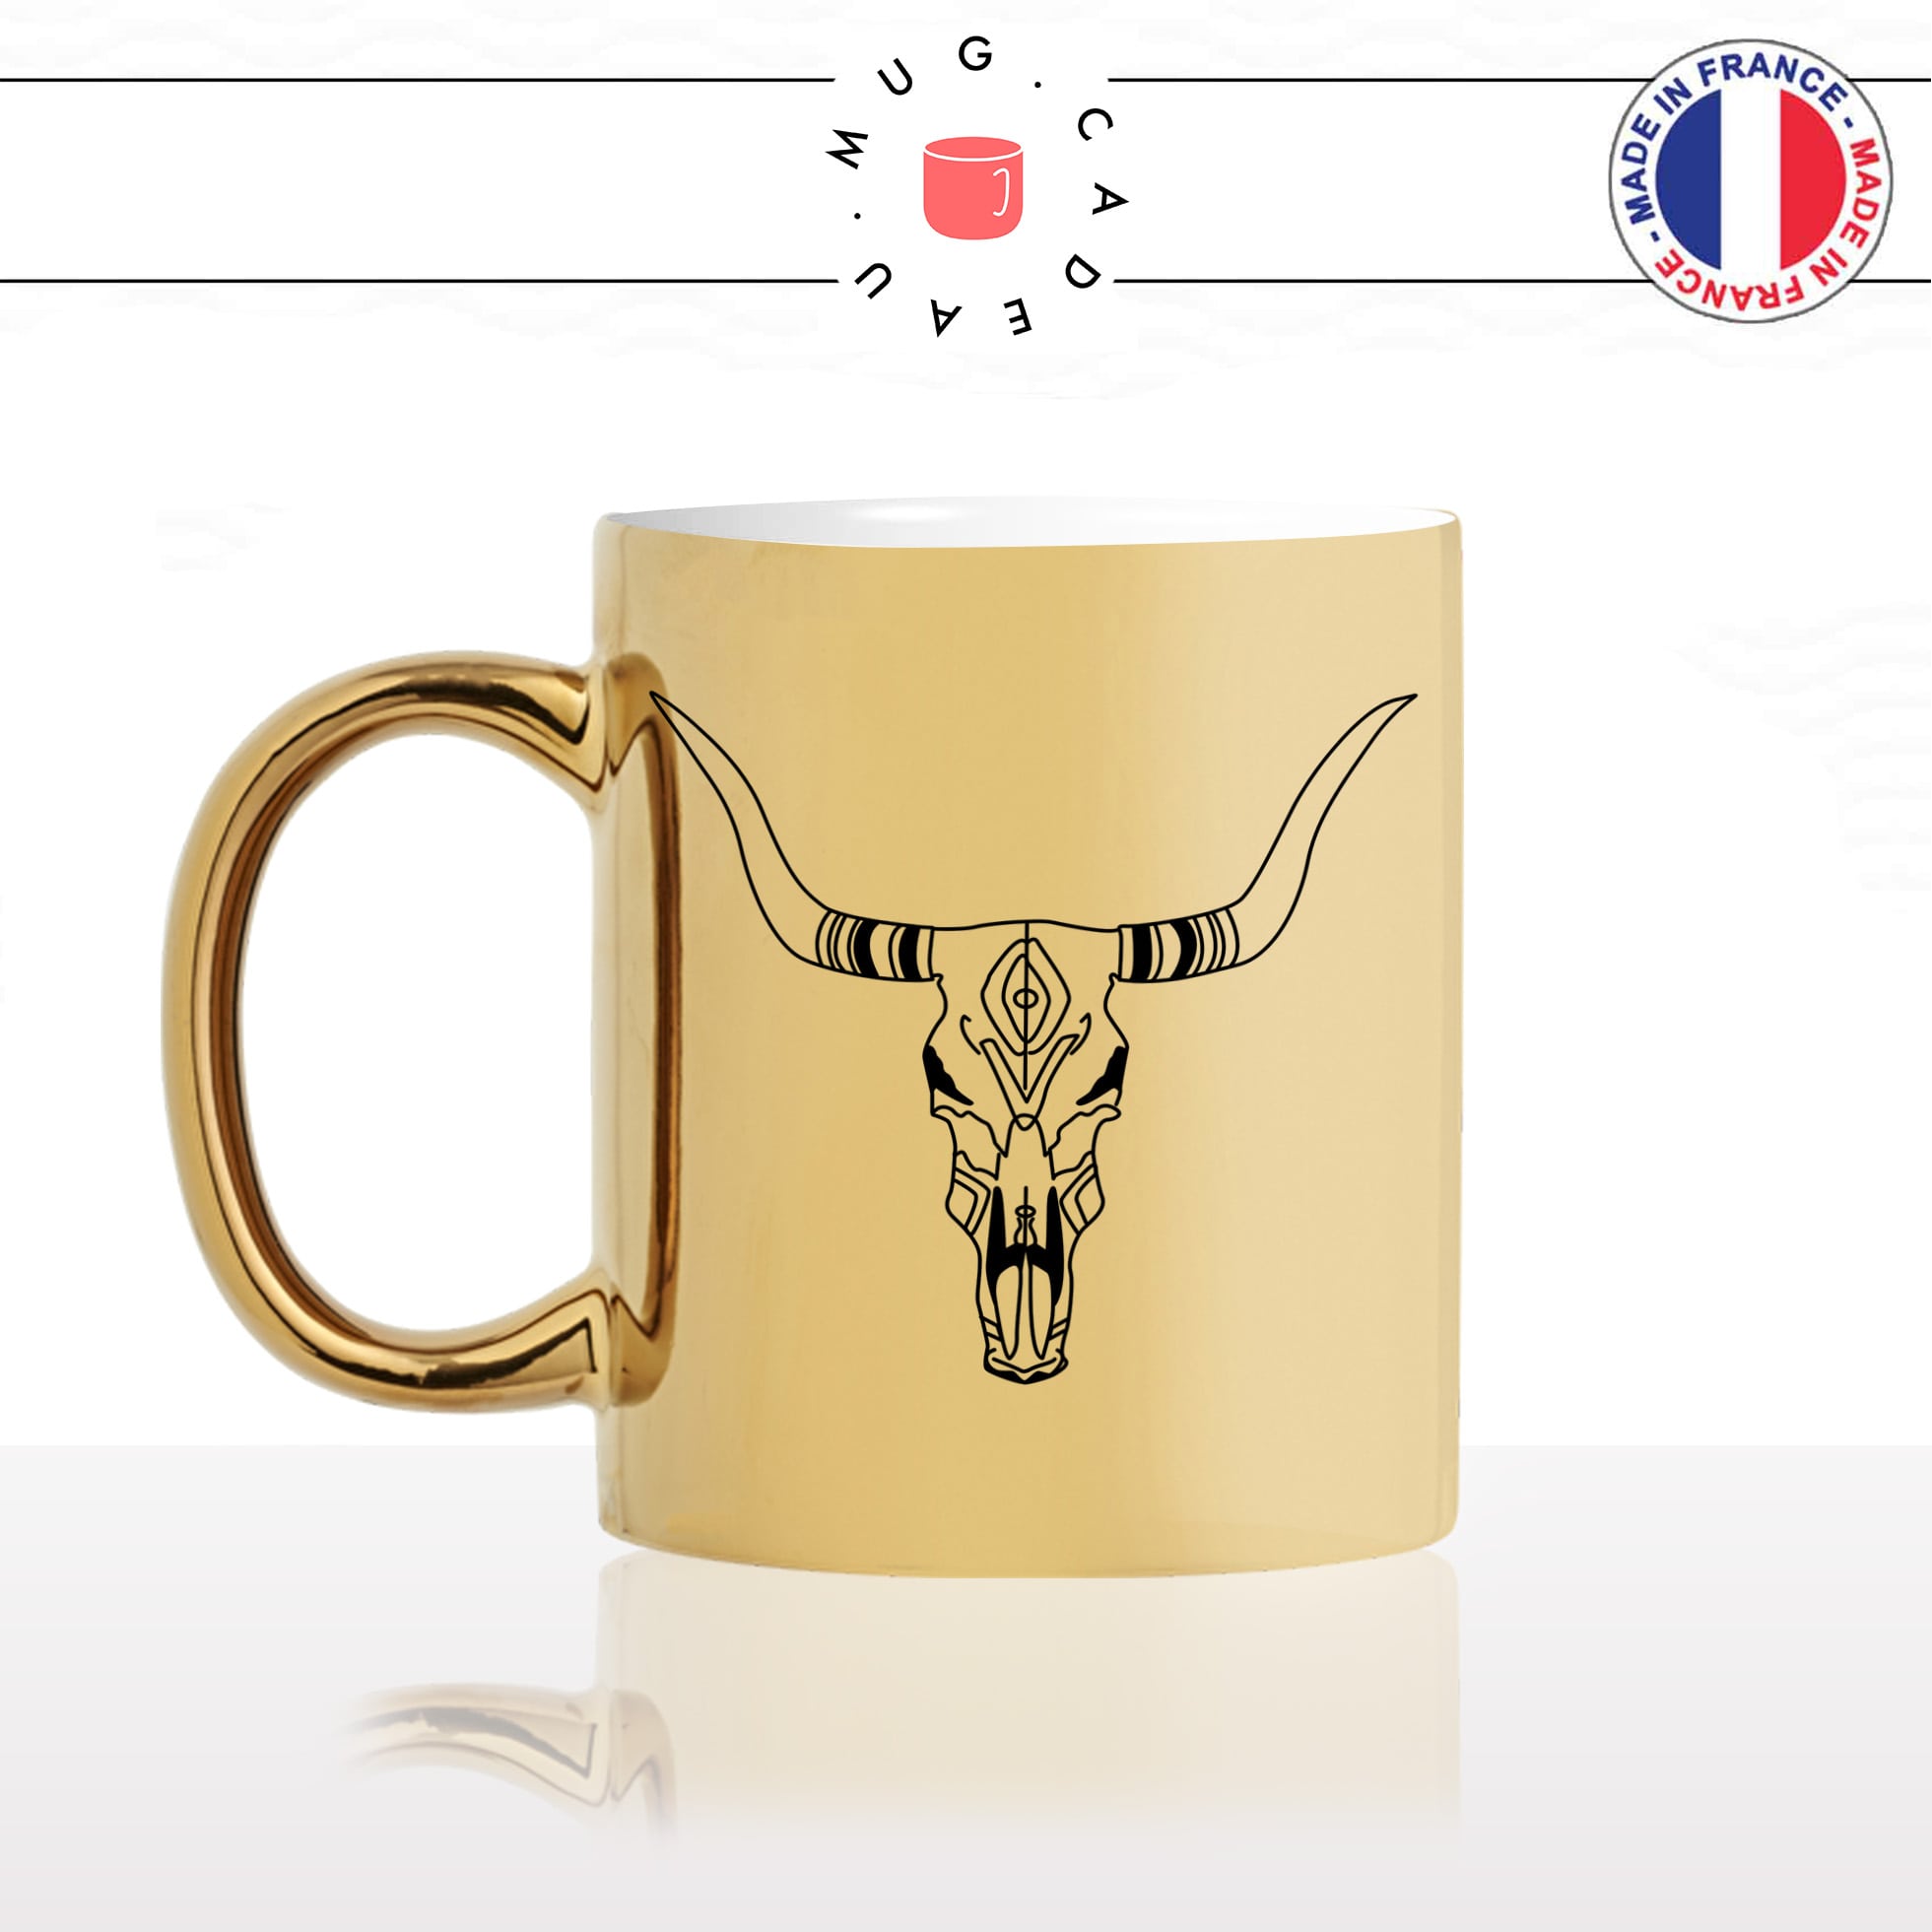 mug-tasse-or-doré-tete-de-buffle-crane-dessin-noir-fun-café-thé-idée-cadeau-original-personnalisable-gold-min